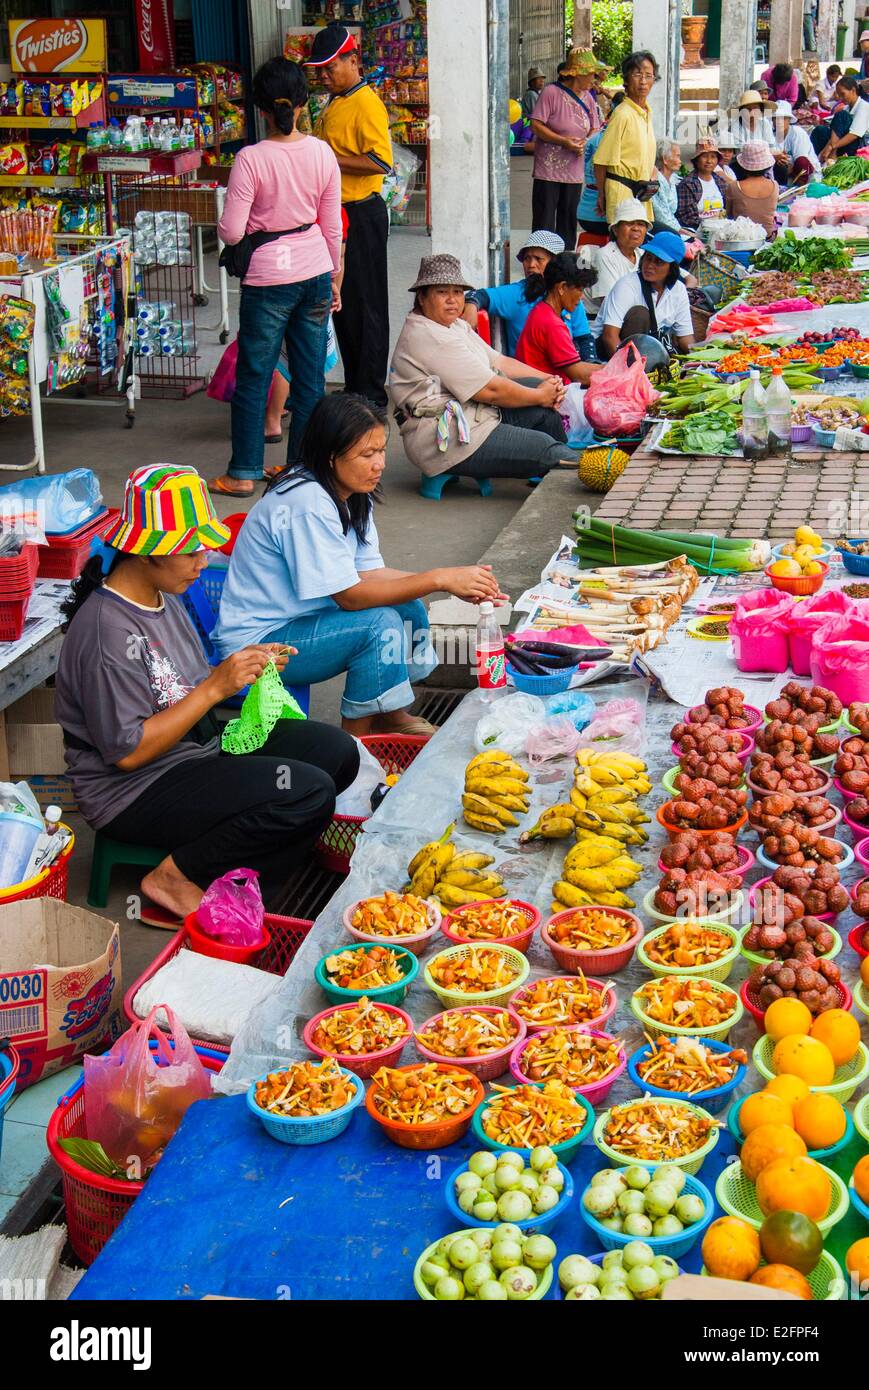 L'État de Sarawak en Malaisie Bornéo Malaisien marché alimentaire Serian Banque D'Images